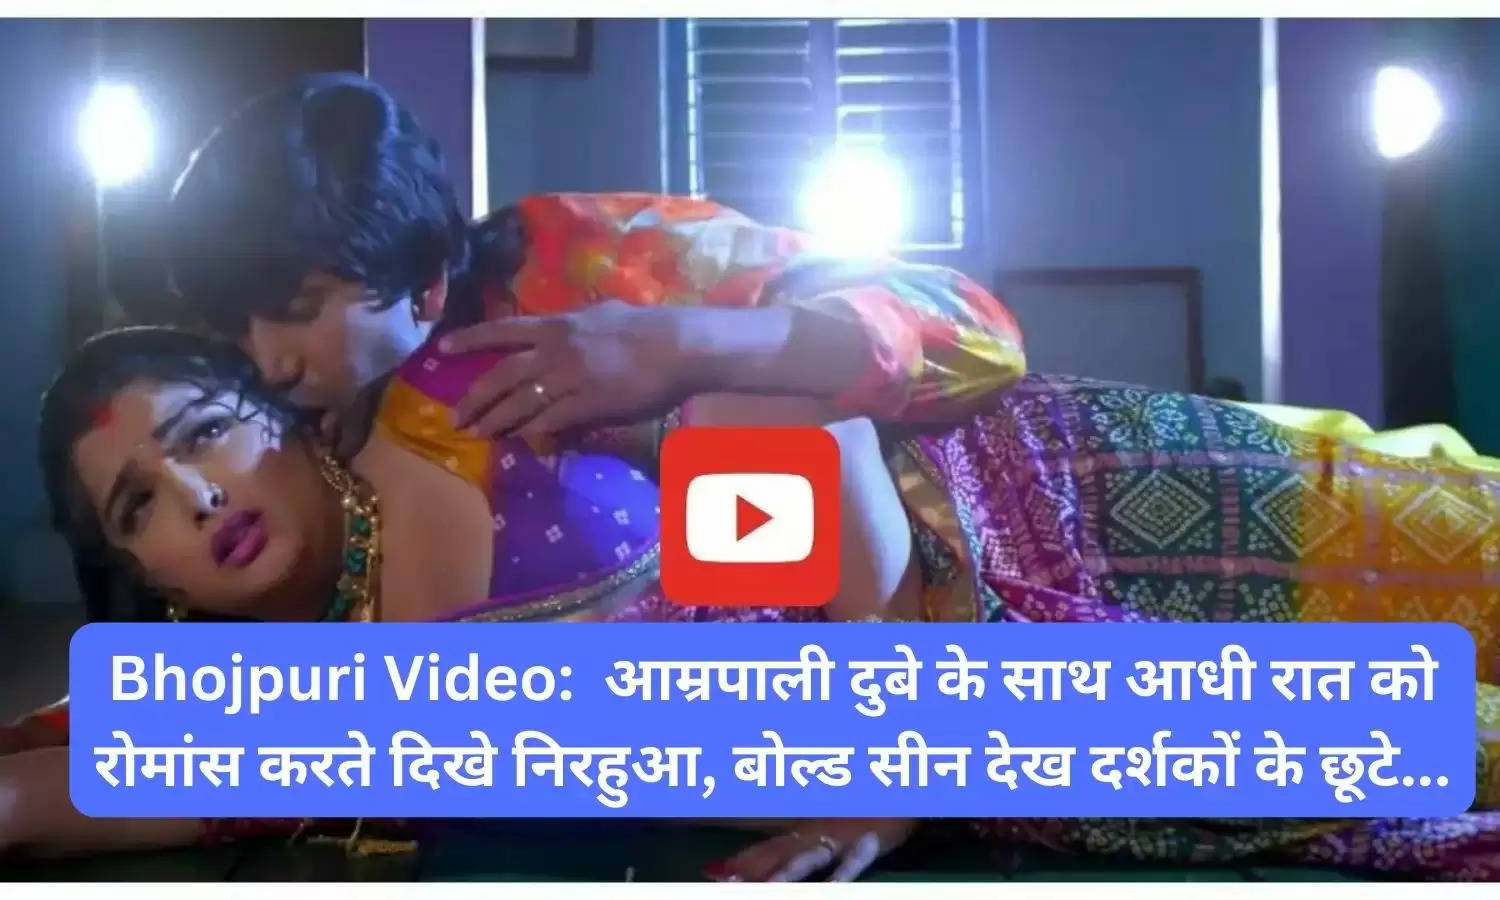 Bhojpuri Video:  आम्रपाली दुबे के साथ आधी रात को रोमांस करते दिखे निरहुआ, बोल्ड सीन देख दर्शकों के छूटे...